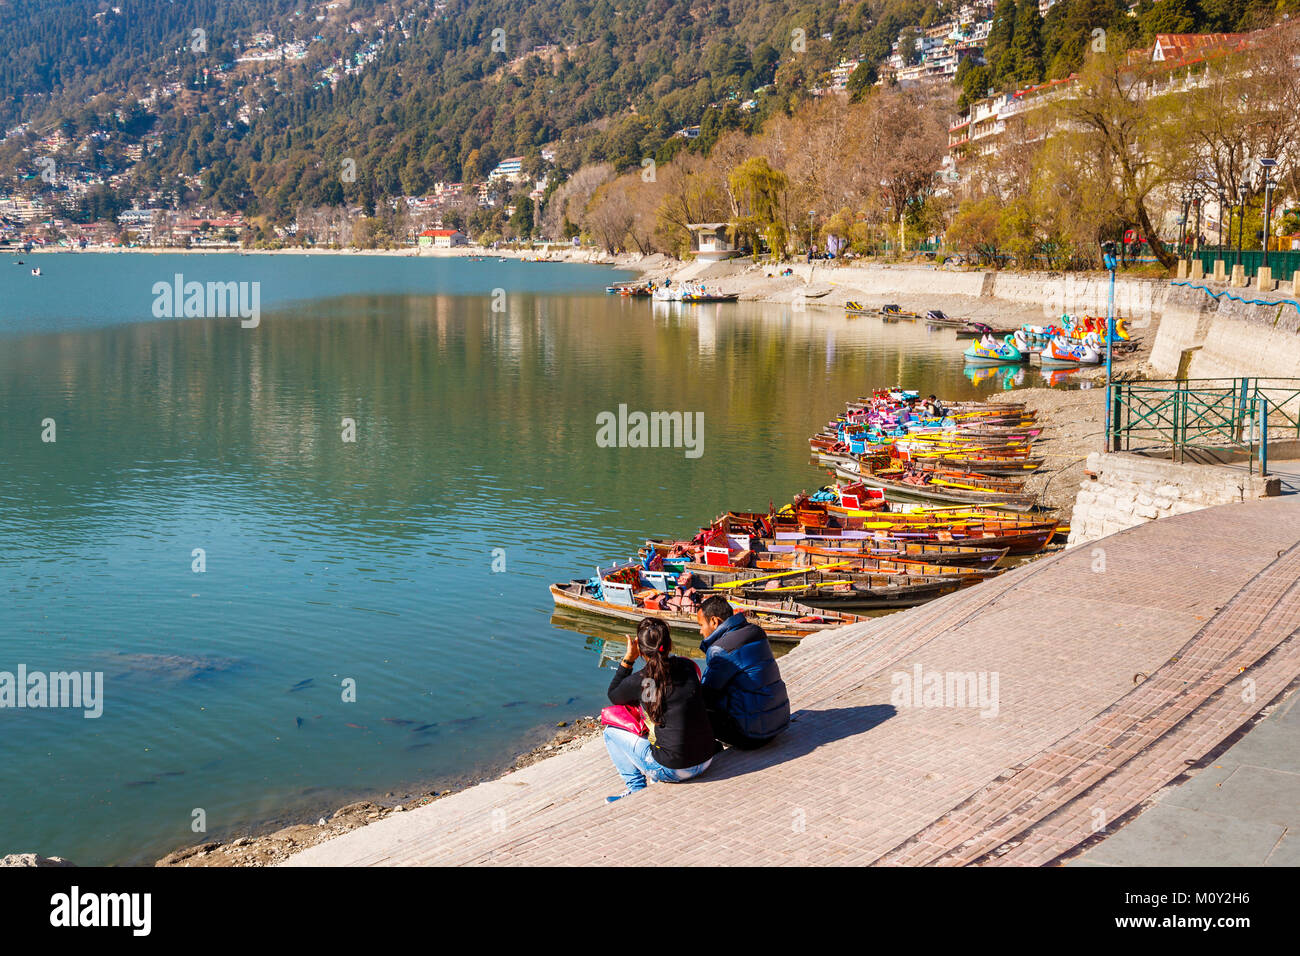 Les loisirs : l'aviron en bois colorés traditionnels bateaux amarrés sur la rive,f Lac de Nainital, Ayerpatta, Nainital, Uttarakhand, Inde du nord Banque D'Images